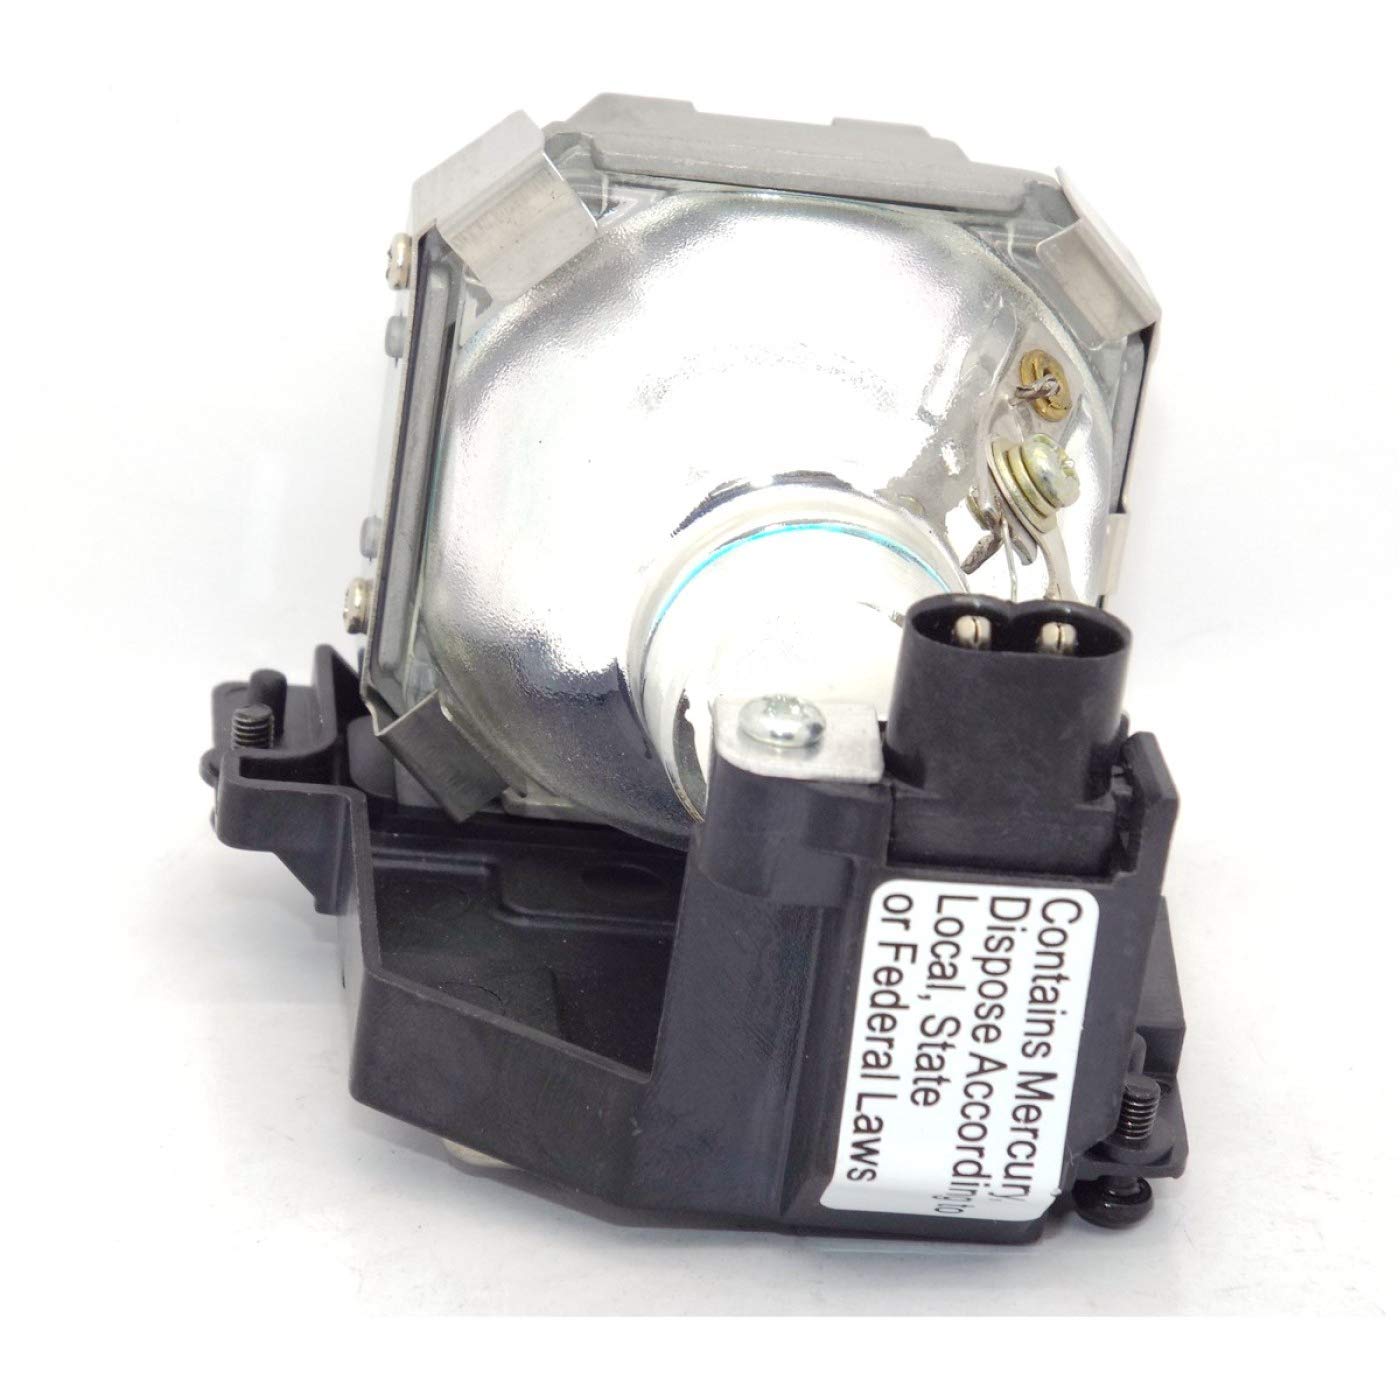 Projektor Lampe LT30LP/456-8762 für A + K DXD 7026/NEC LT25, LT30/UTAX DXD 5022/DUKANE ImagePro 8762 projektoren